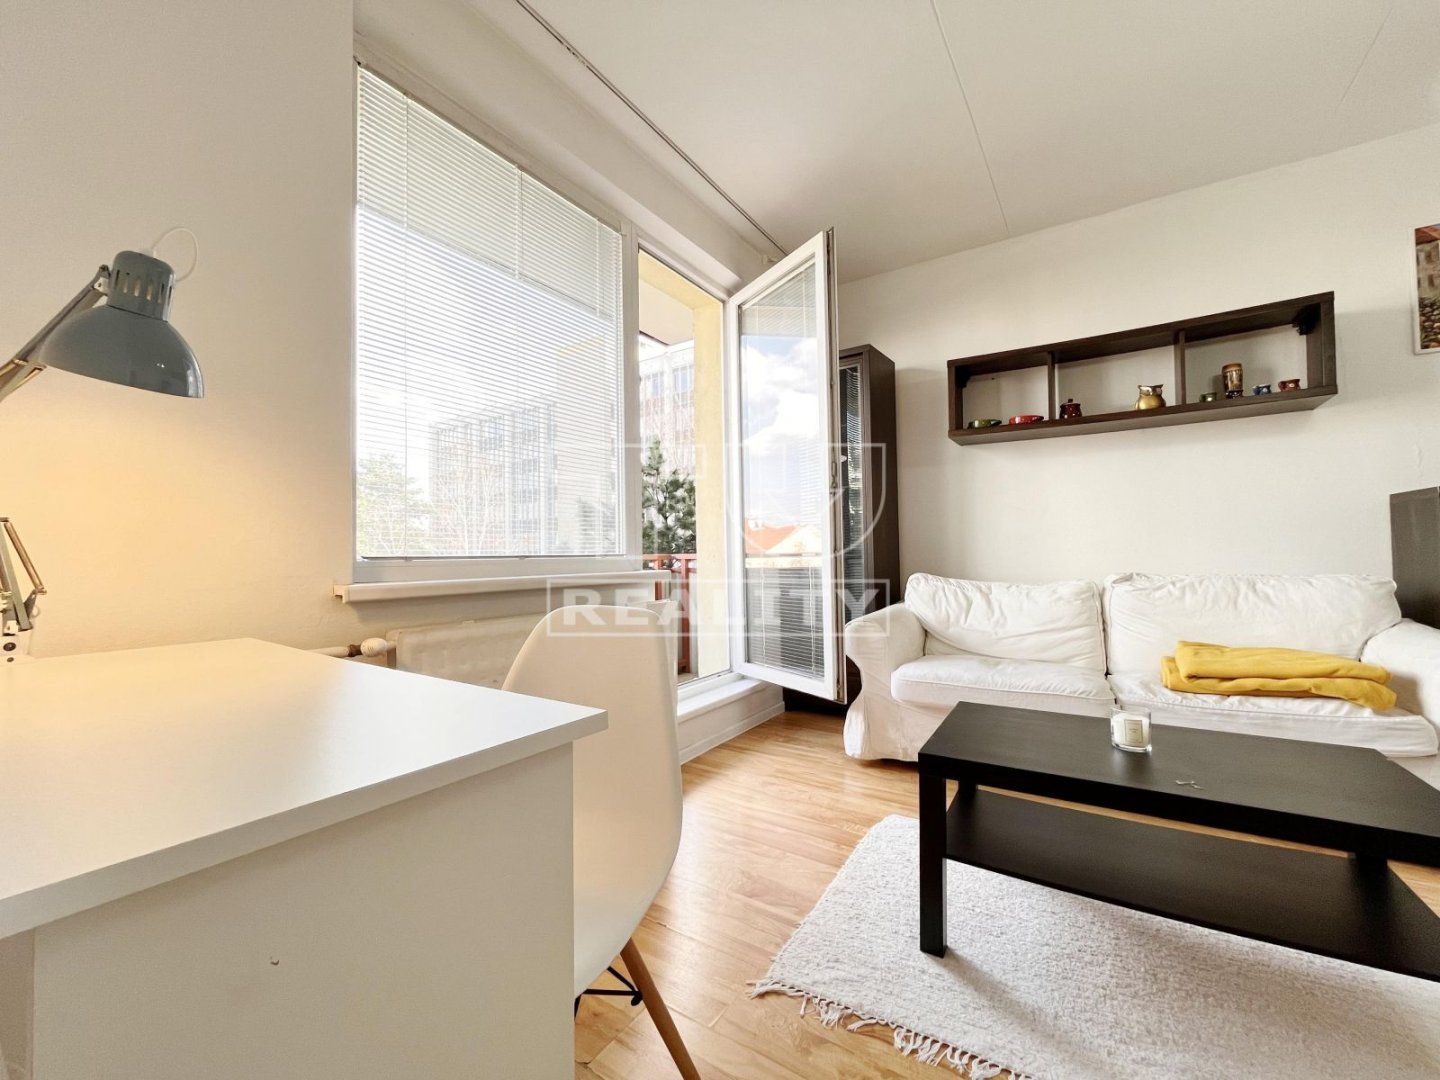 TUreality ponúka na predaj  veľký 1i byt s balkónom v centre Zvolena o výmere 37 m²